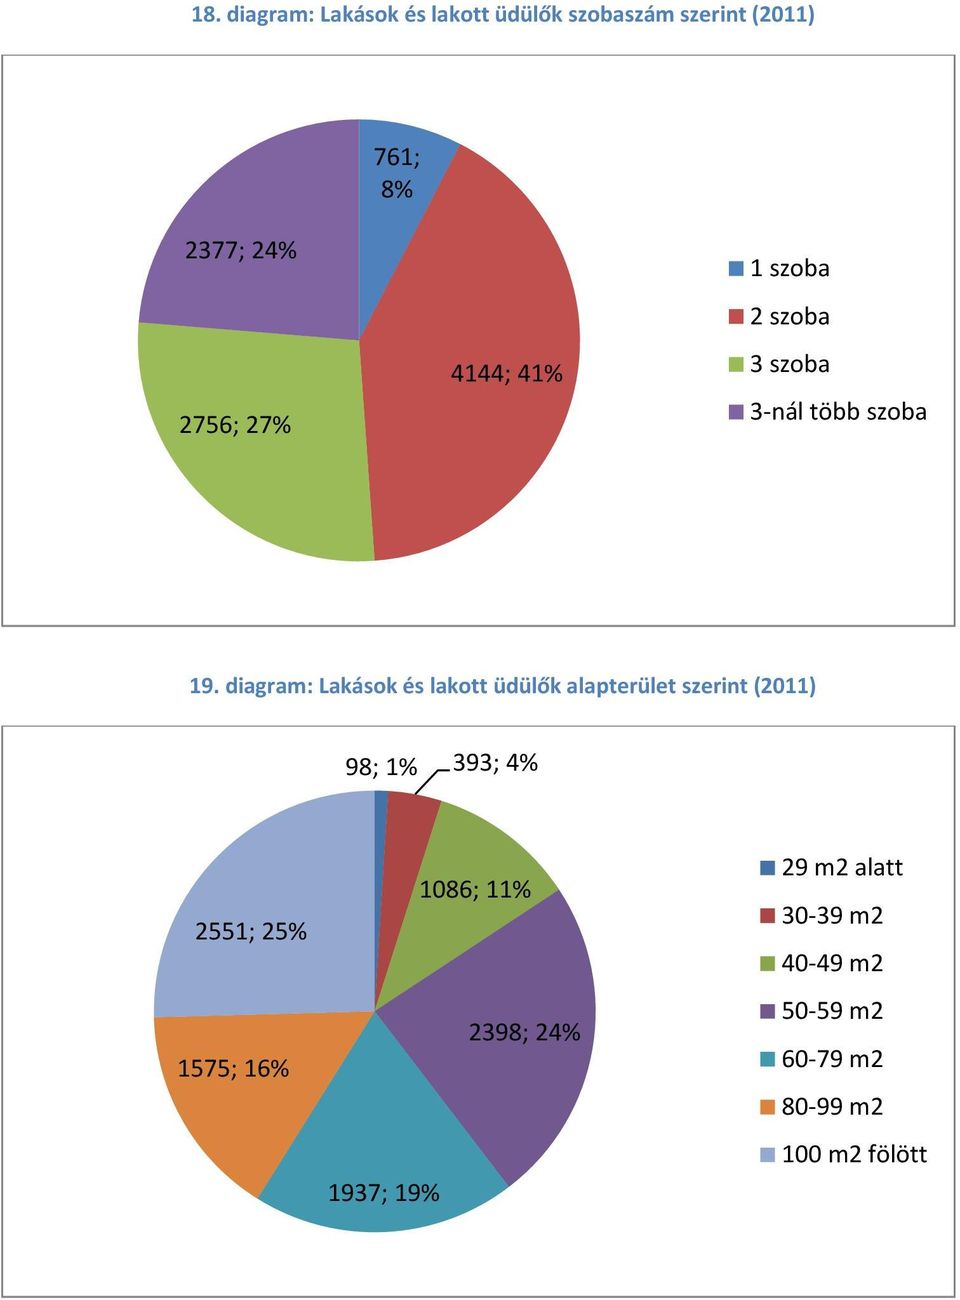 diagram: Lakások és lakott üdülők alapterület szerint (2011) 98; 1% 393; 4% 2551; 25%